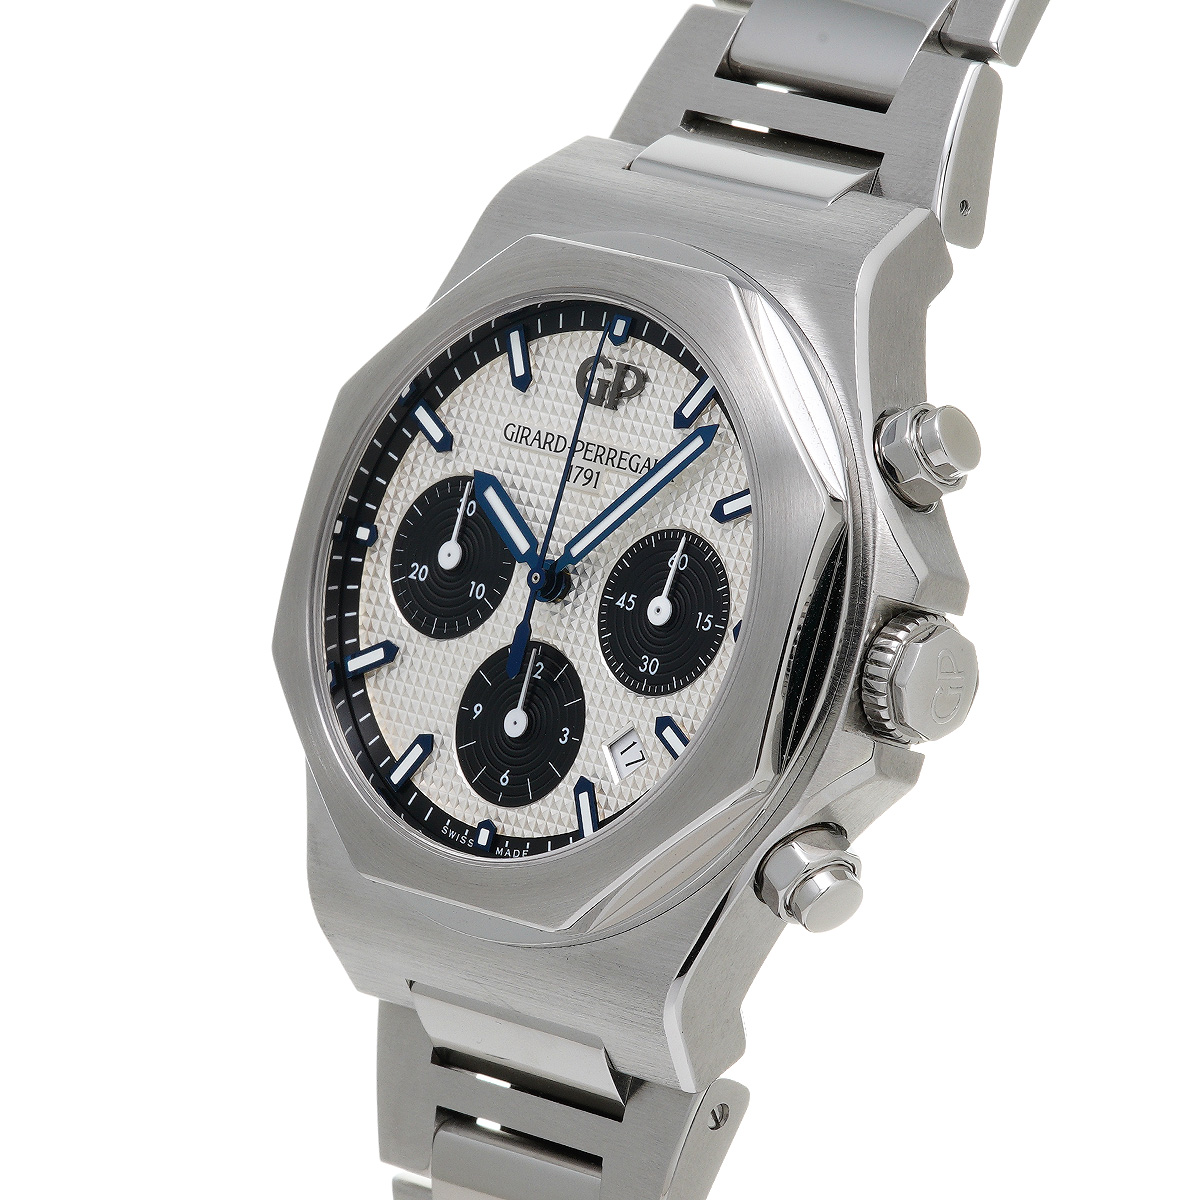 即時発送 中古 ジラール ペルゴ GIRARD-PERREGAUX 81020-11-131-11A シルバー /ブラック メンズ 腕時計  ジャパン 本物:670113円 腕時計 (アナログ)